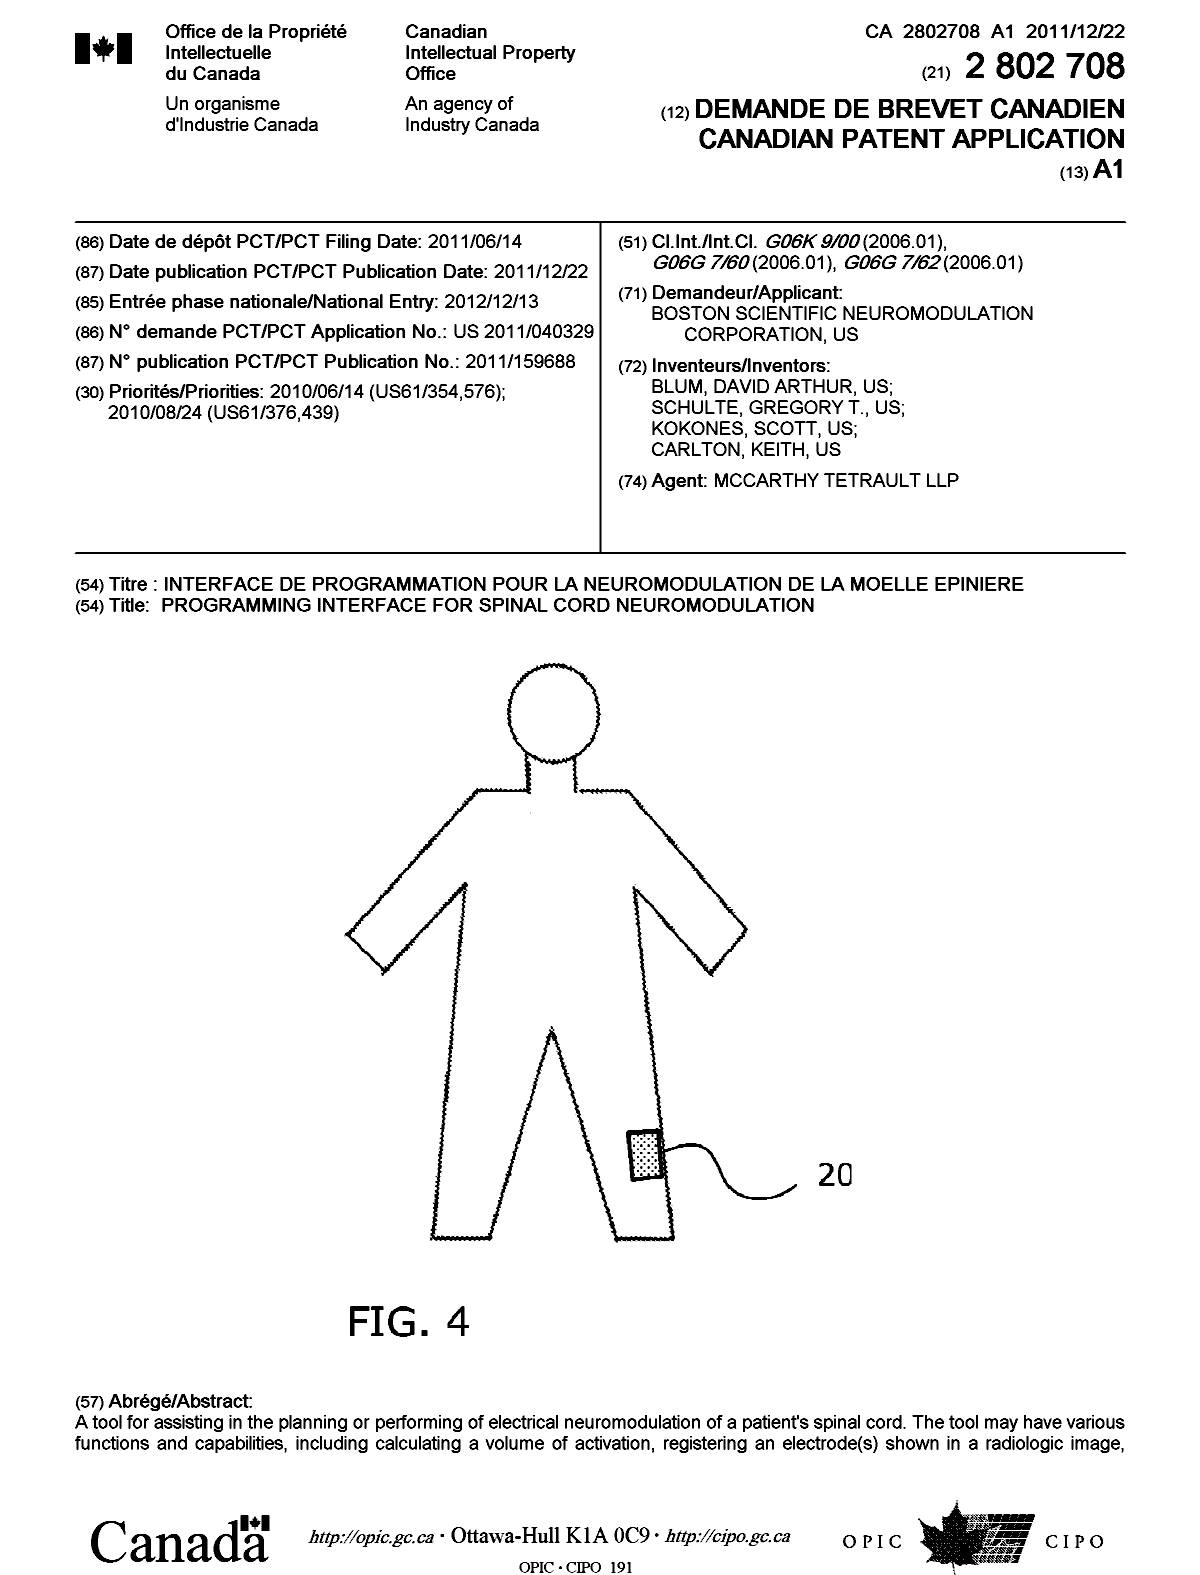 Document de brevet canadien 2802708. Page couverture 20130208. Image 1 de 2